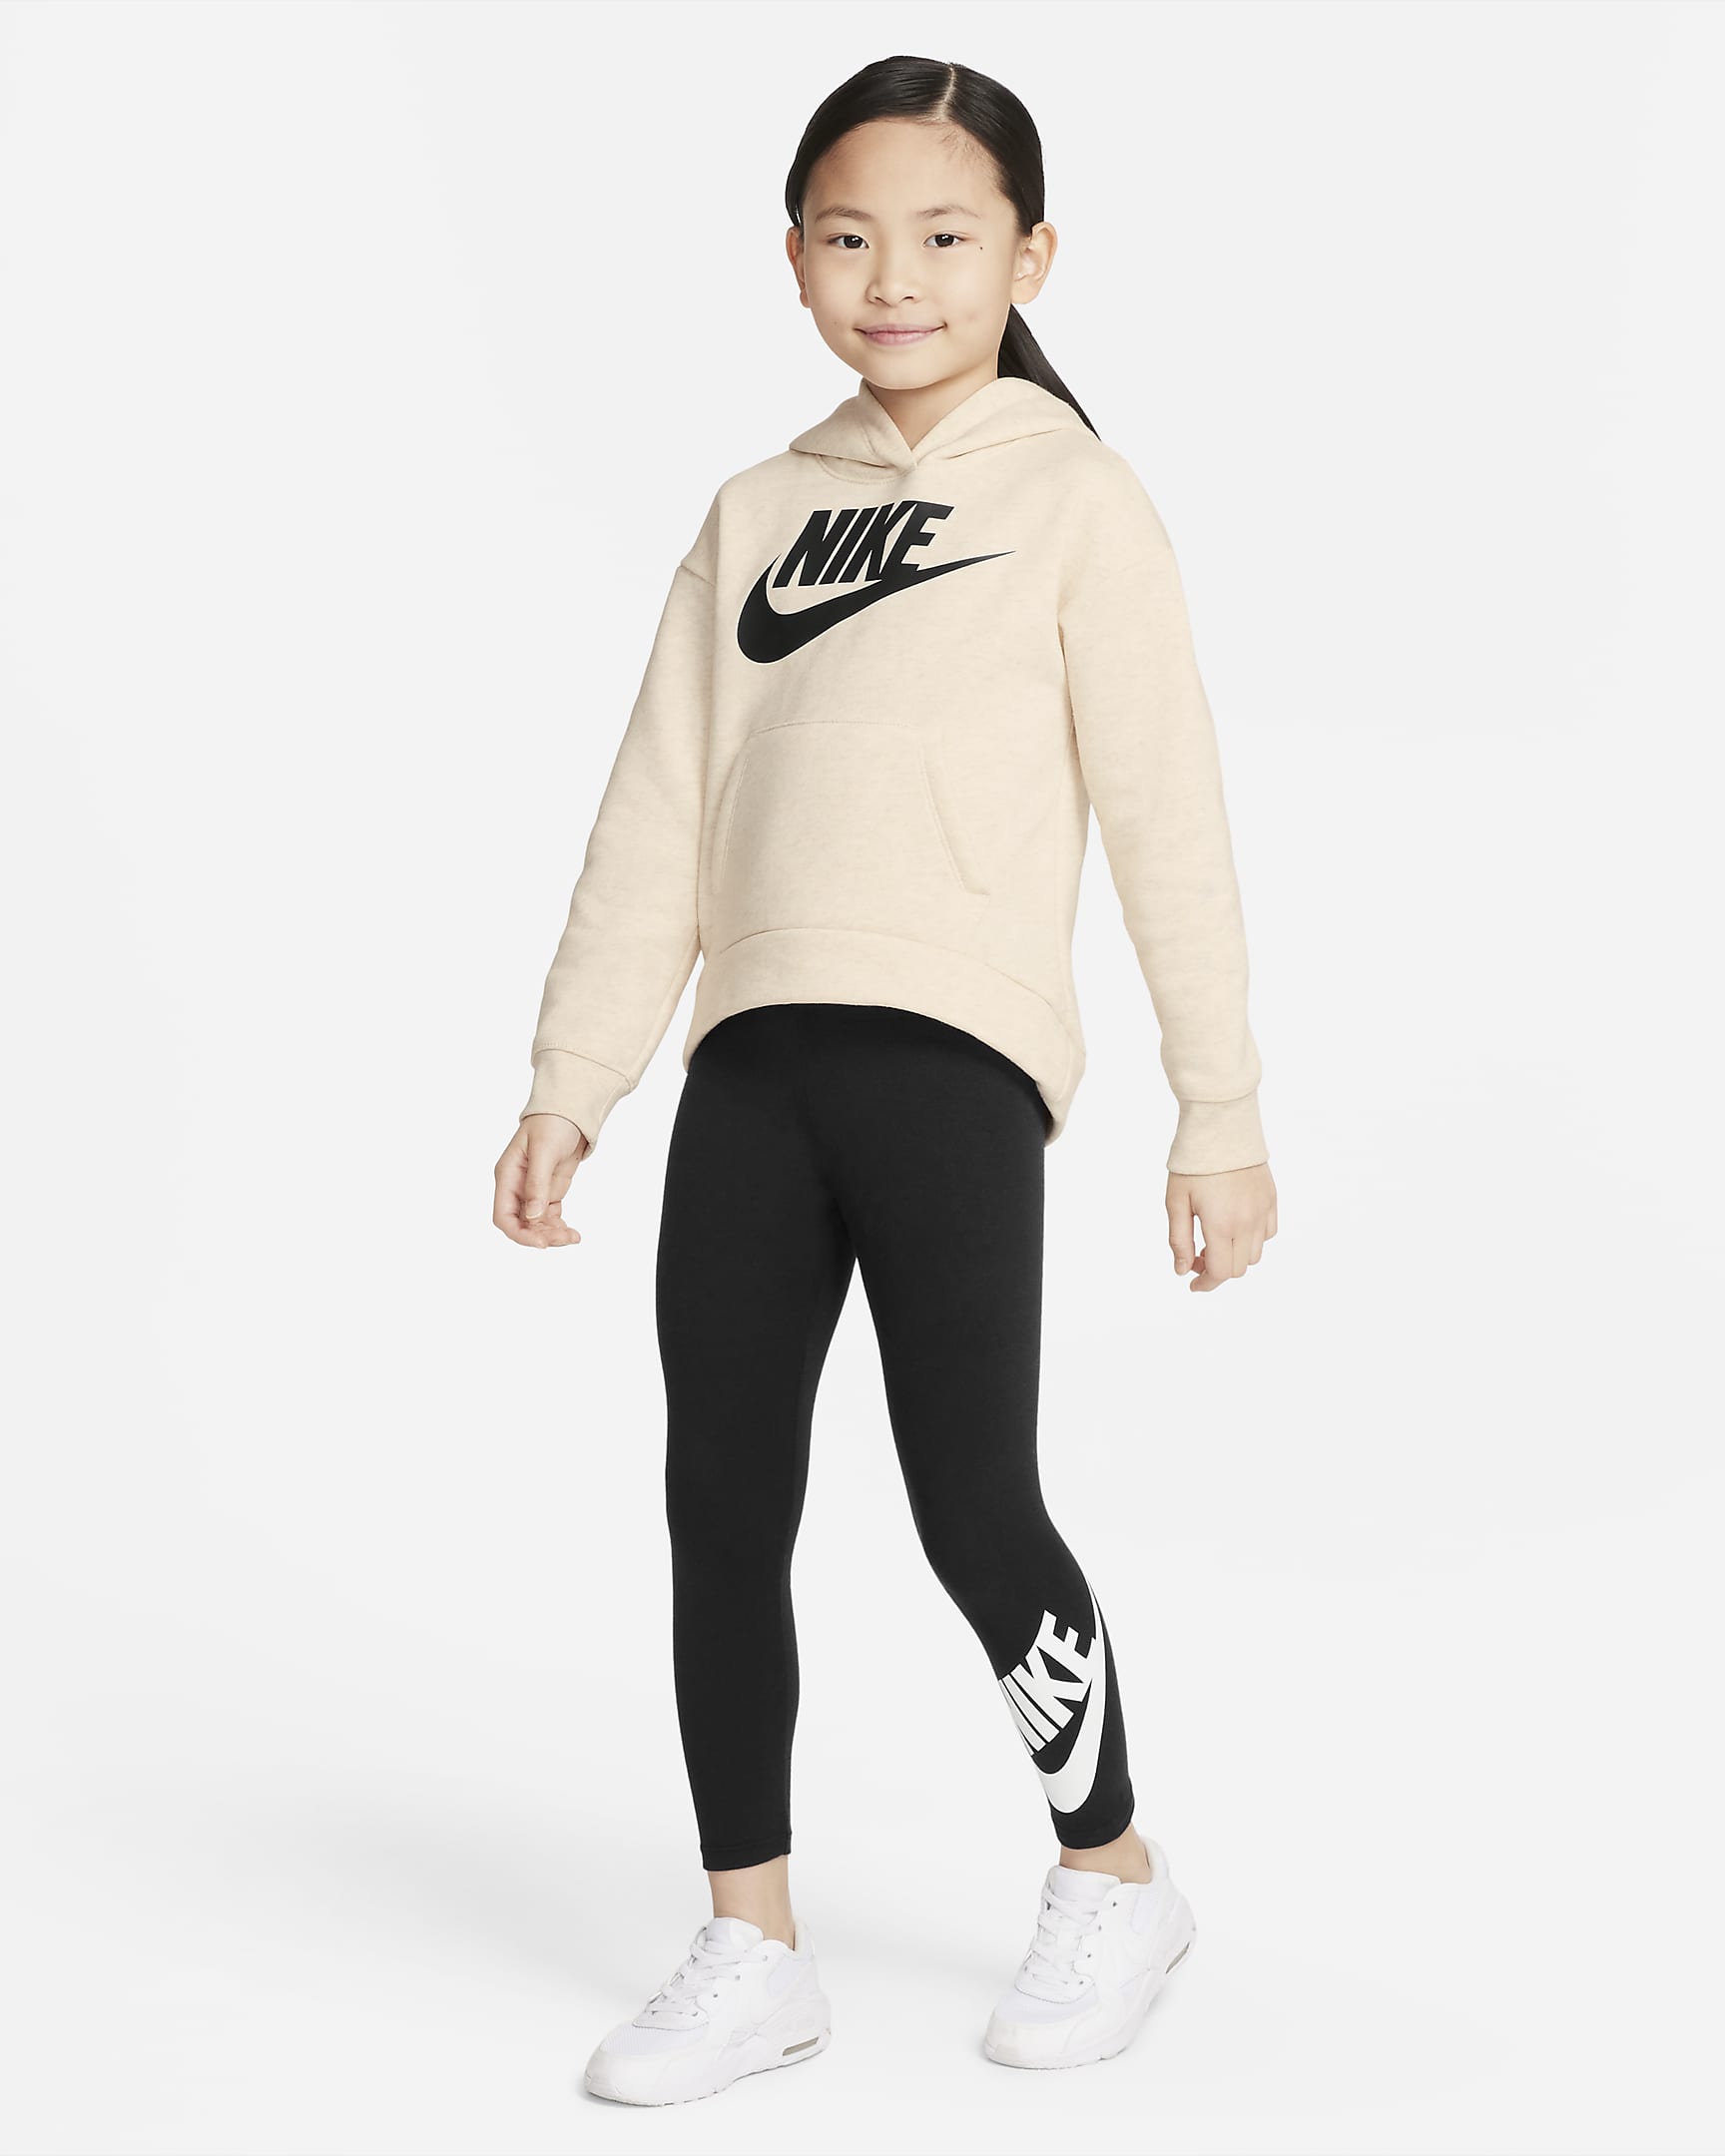 Sudadera con gorro sin cierre para niños talla pequeña Nike Sportswear ...